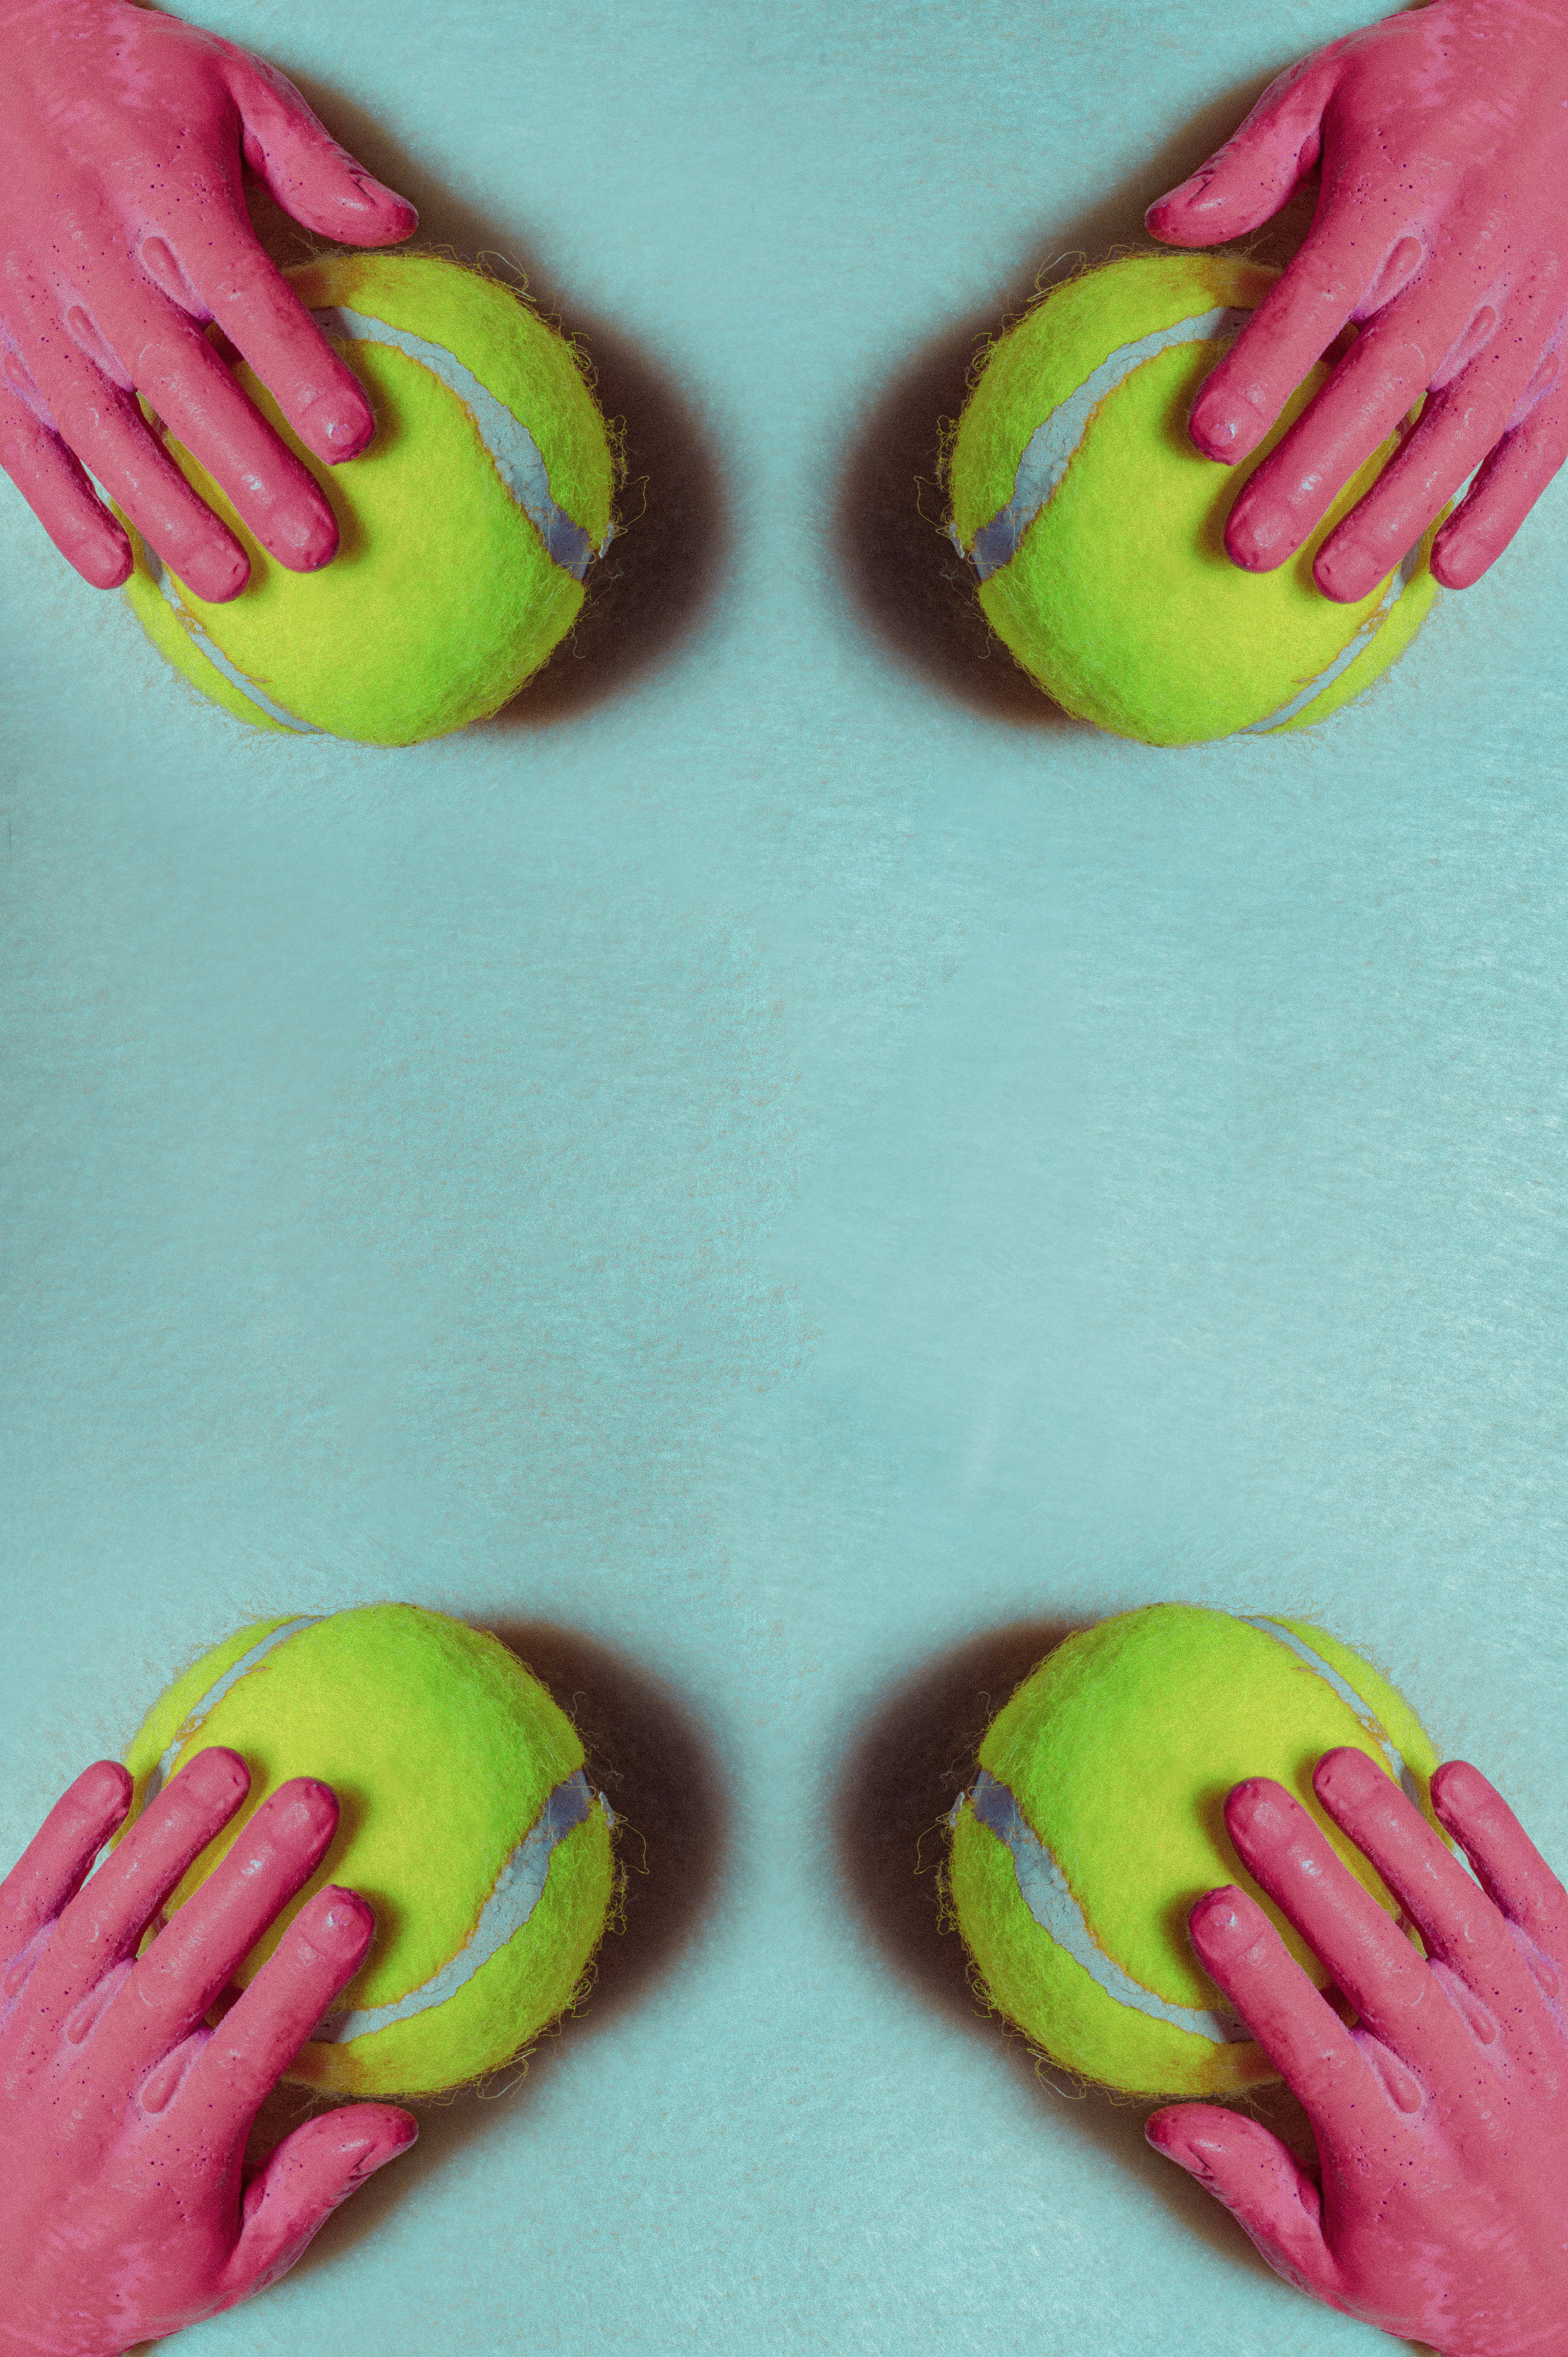 Définition de court de tennis | Dictionnaire français